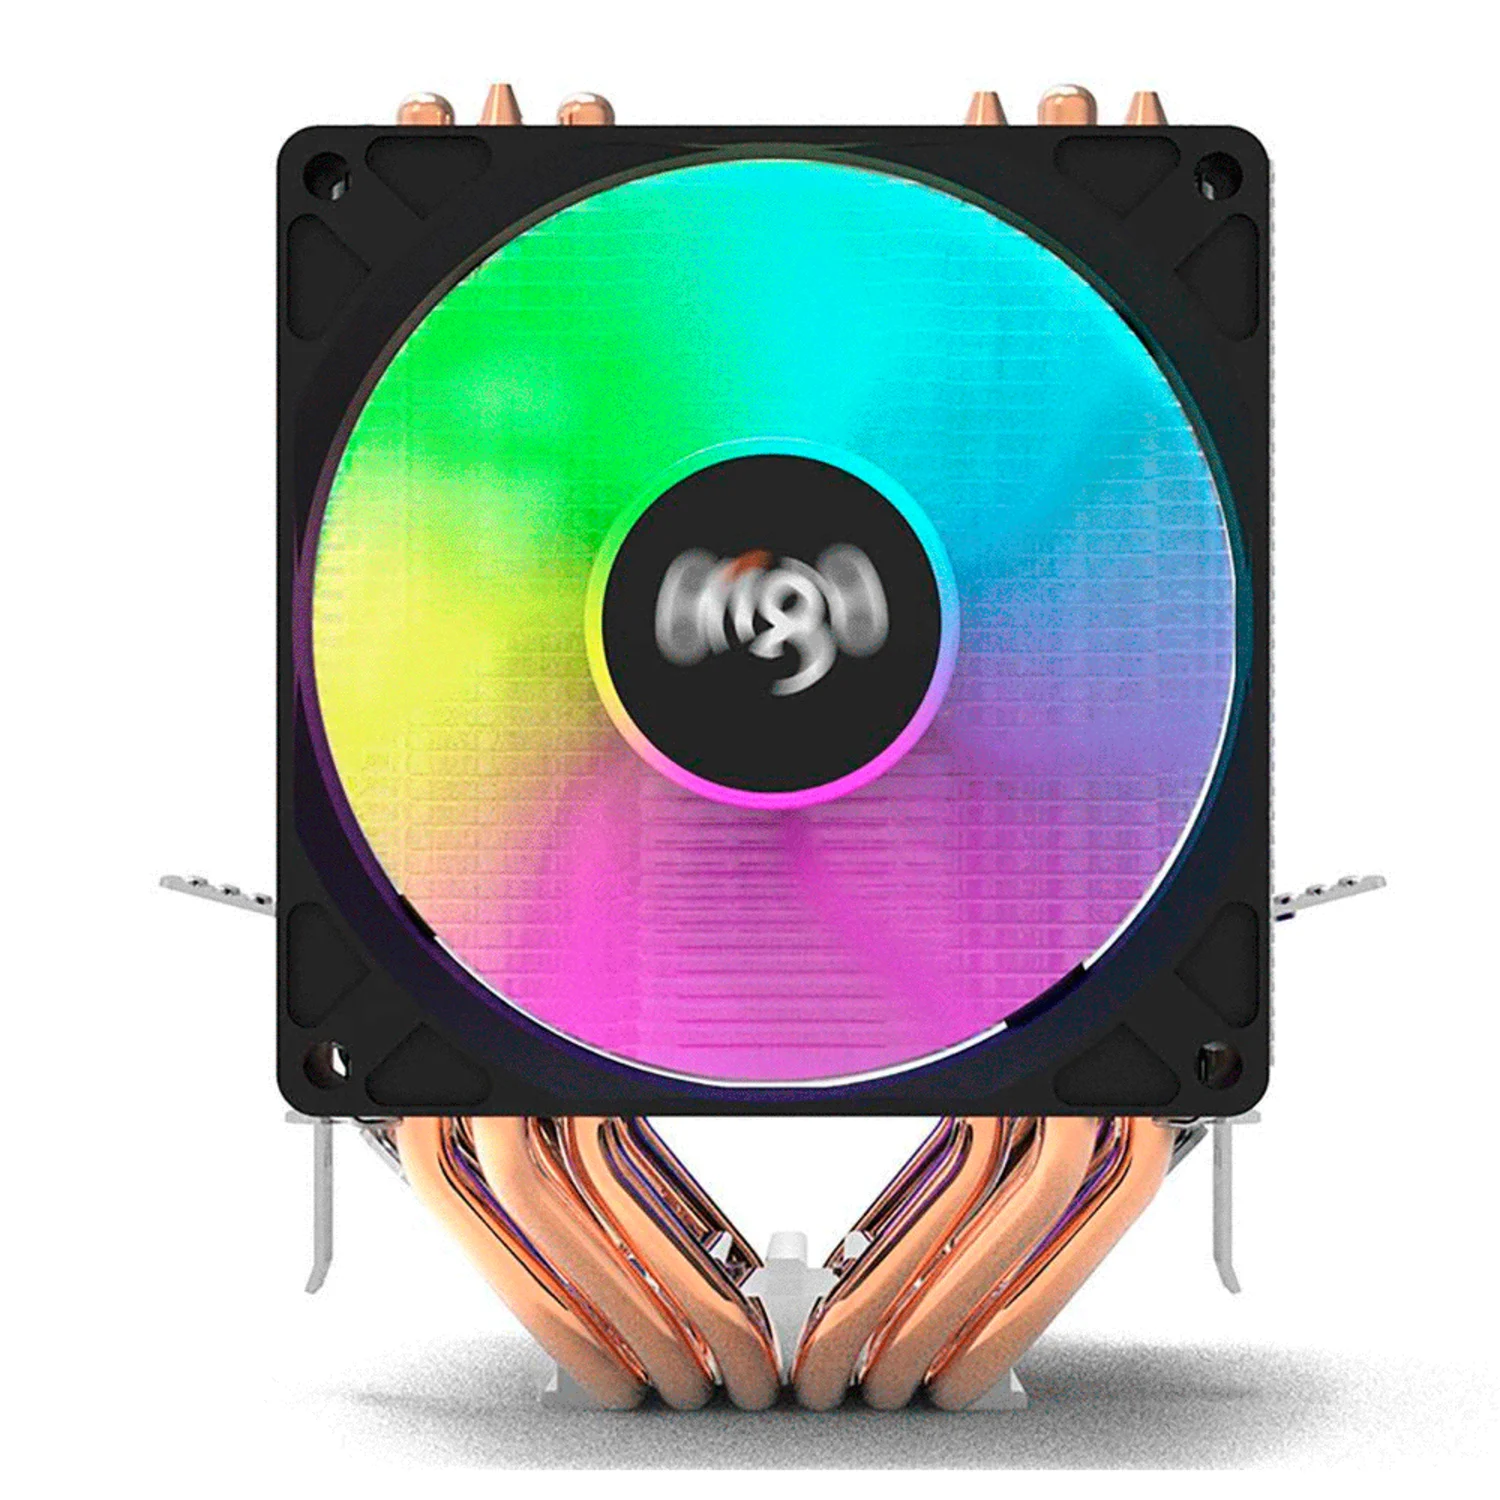 Cooler para Processador Aigo Gale Rainbow (3 Fans)